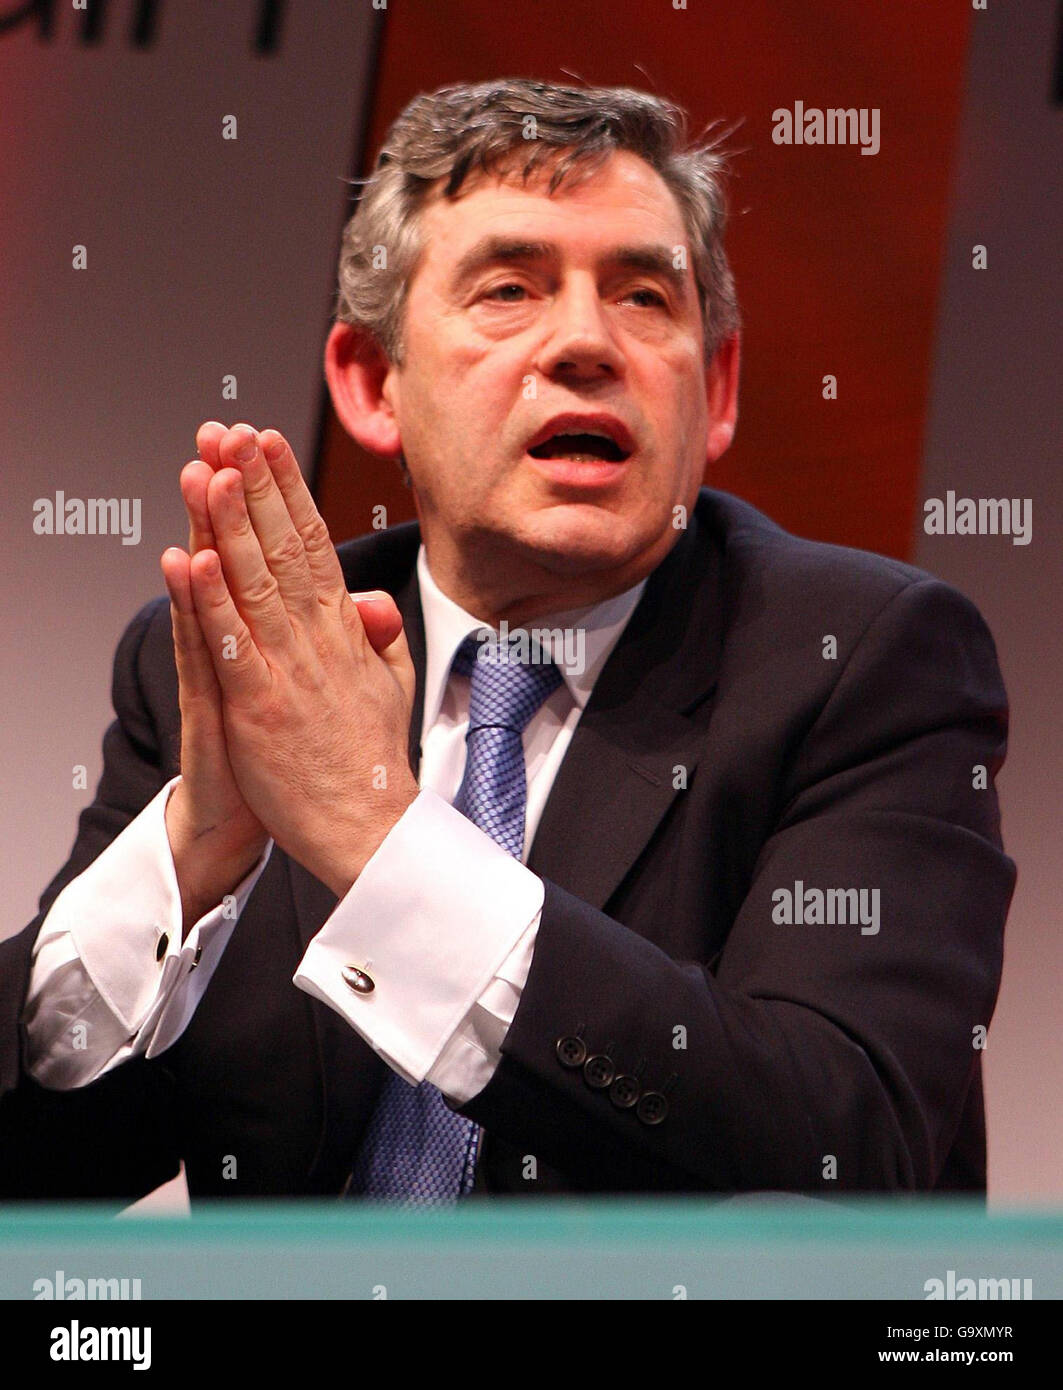 Bundeskanzler Gordon Brown bei einer Fragestunde mit Oona King im C.I.S Building in Manchester. Stockfoto